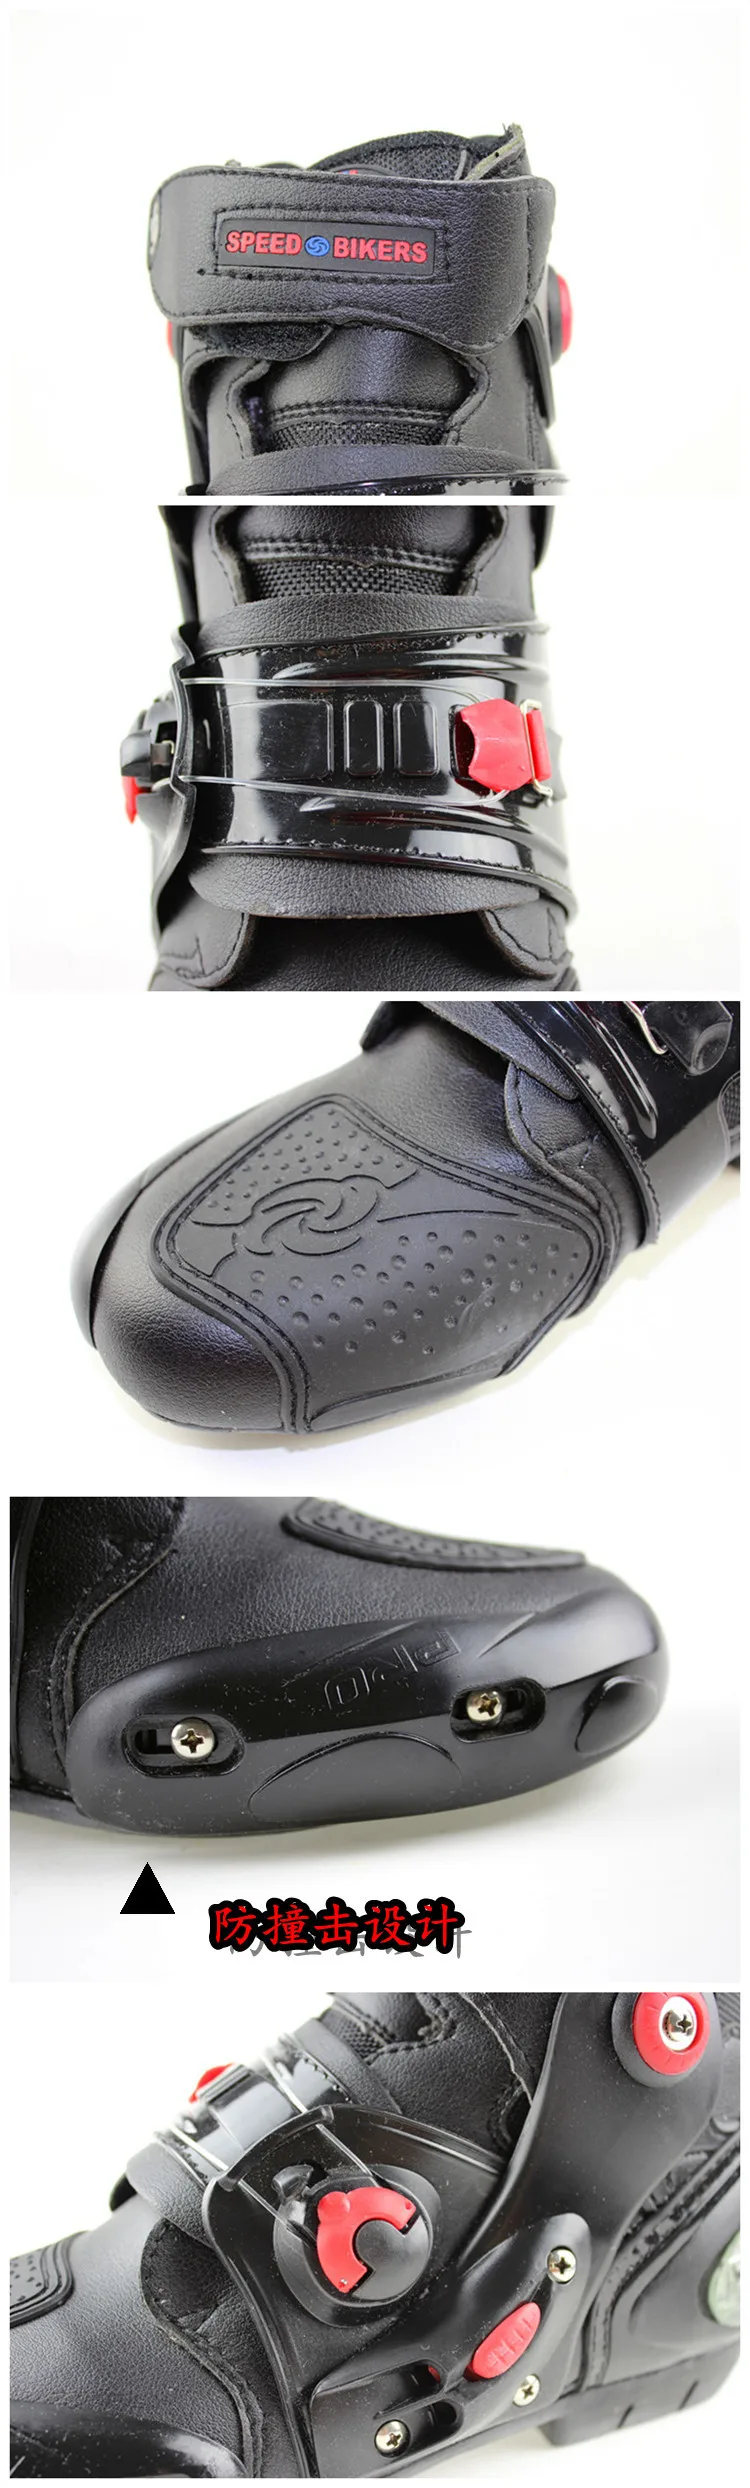 Pro байкерские Ботильоны кожаные мото ботинки мотоциклетные ботинки мужские гоночные боты мото r байкерские ботинки мото rboats для мотокросса черные